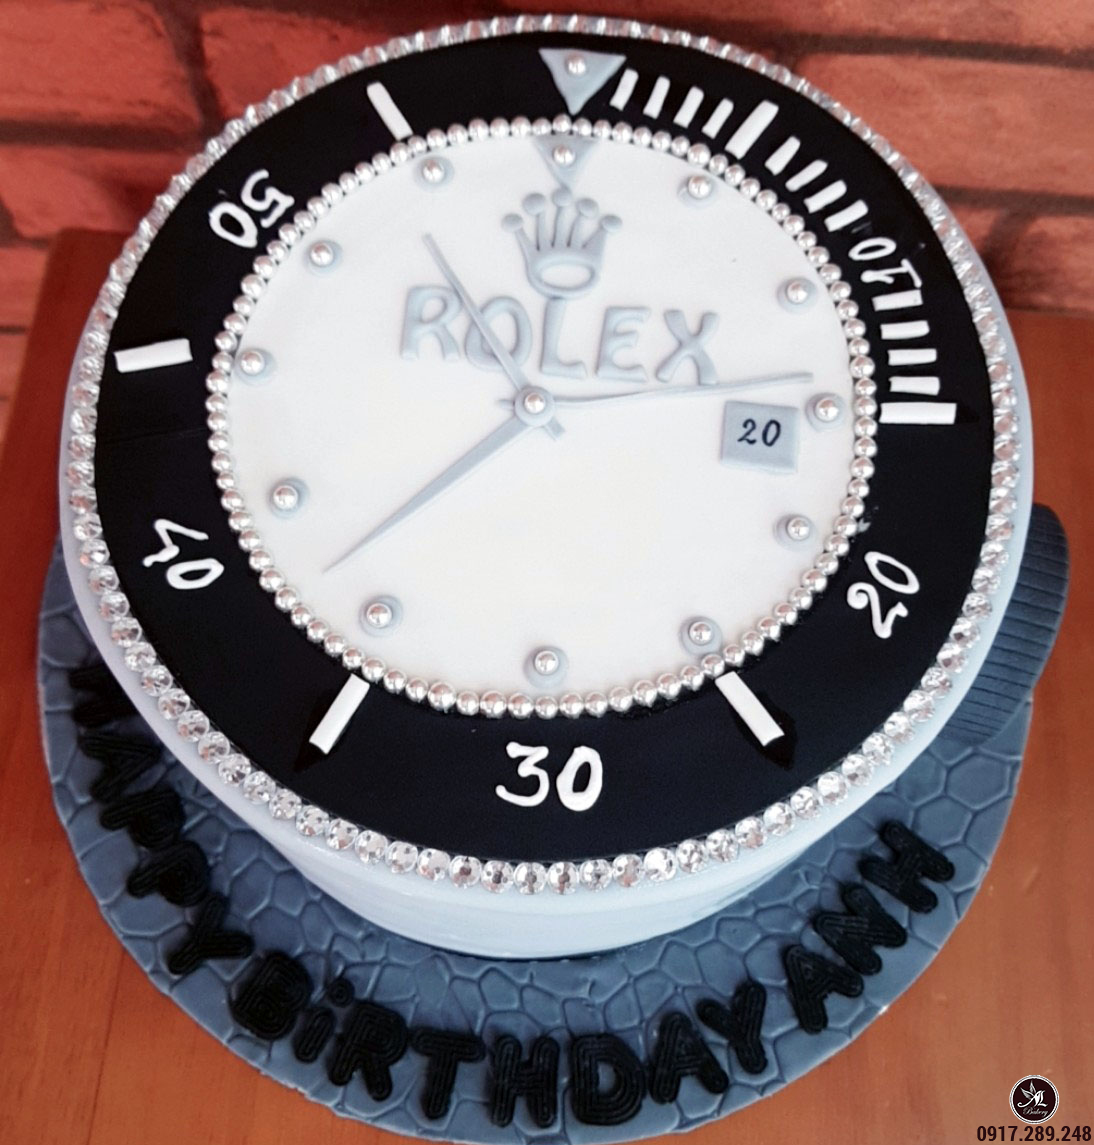 Bánh sinh nhật tạo hình đồng hồ Rolex cho bạn trẻ đam mê đồng hồ ...